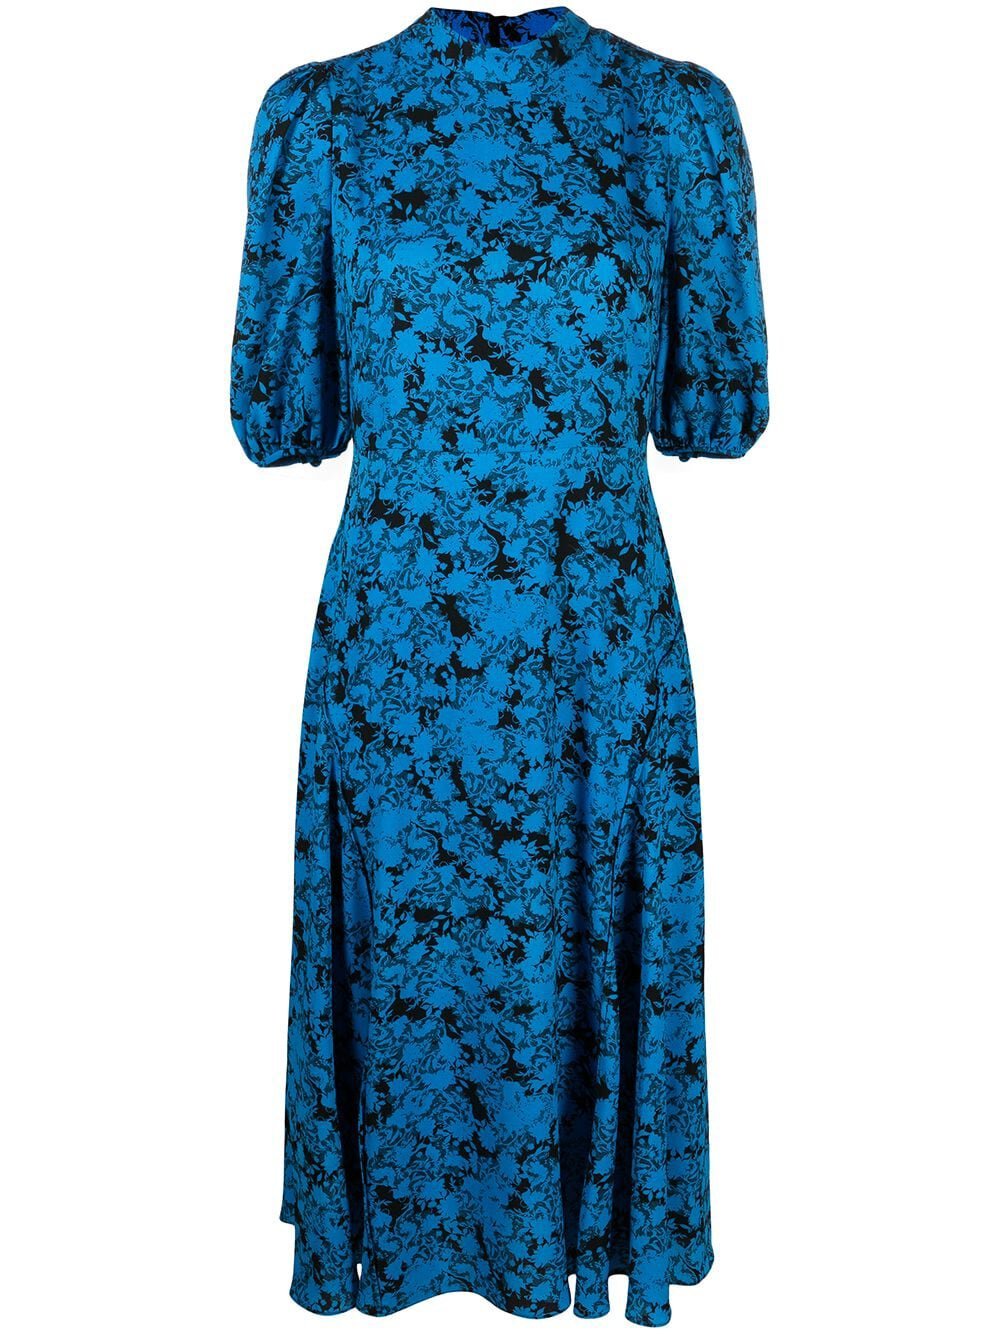 Diane von Furstenberg Nella Dress in BlueBlack.jpg